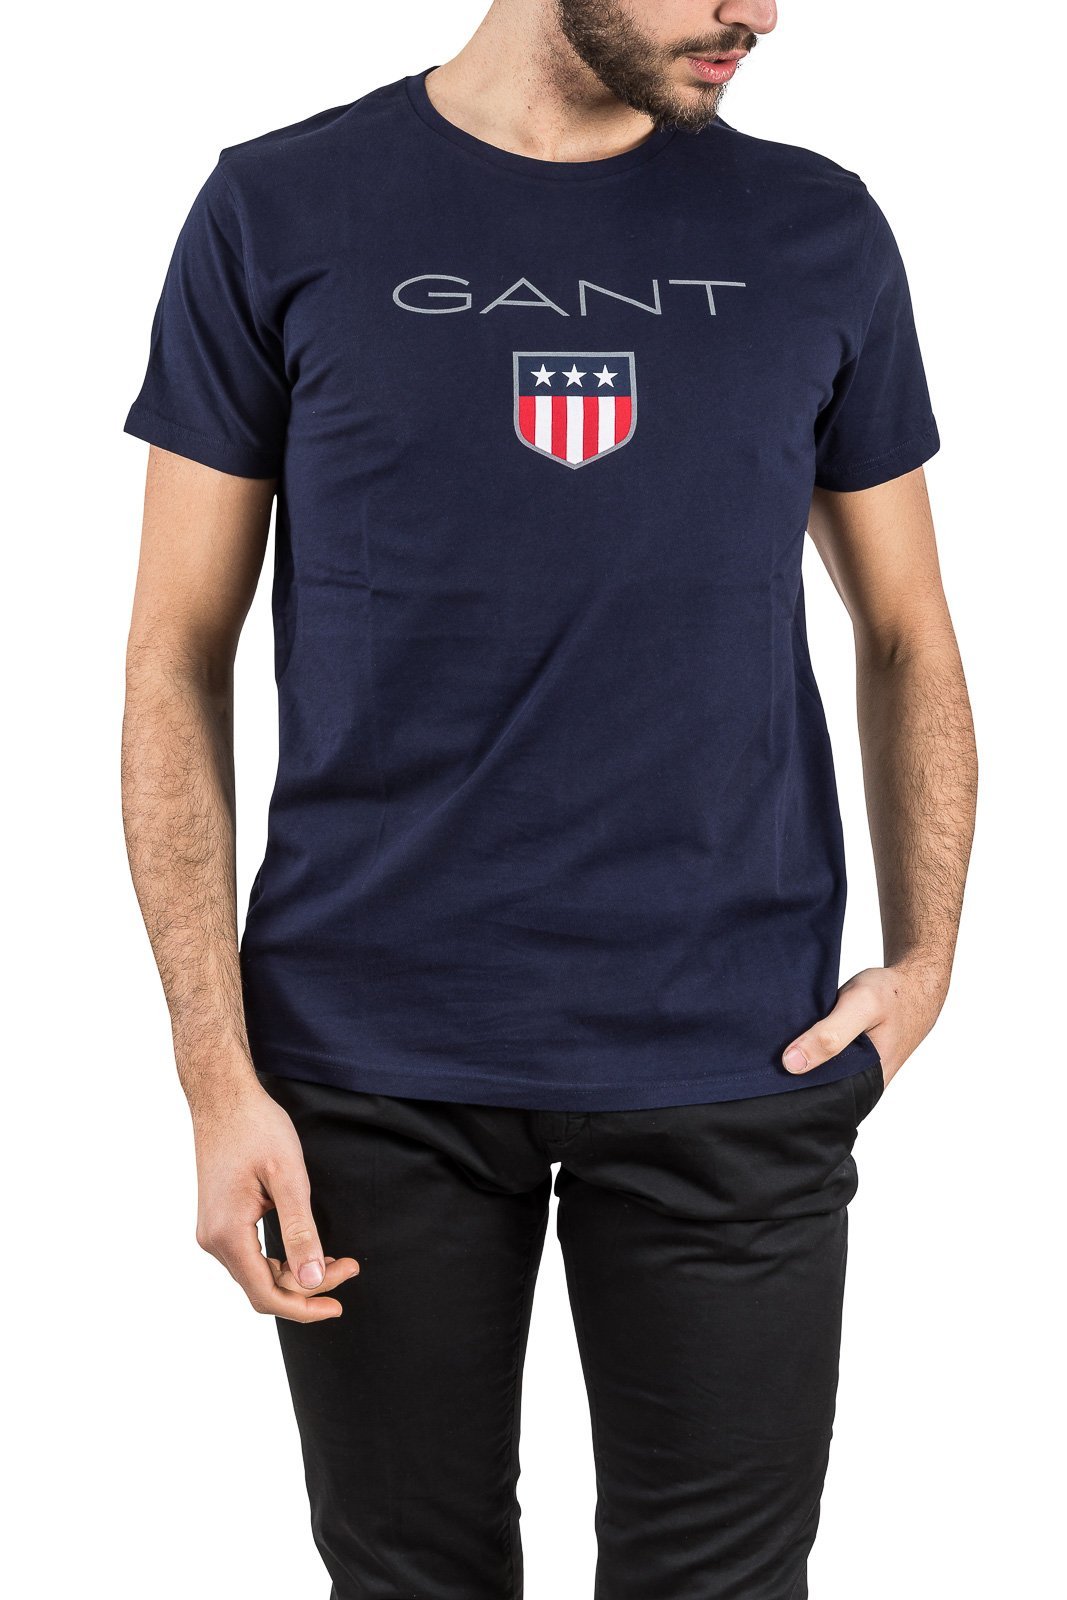 GANT Herren O1. Shield T-shirt T Shirt, Blau (Evening Blue 433), M EU